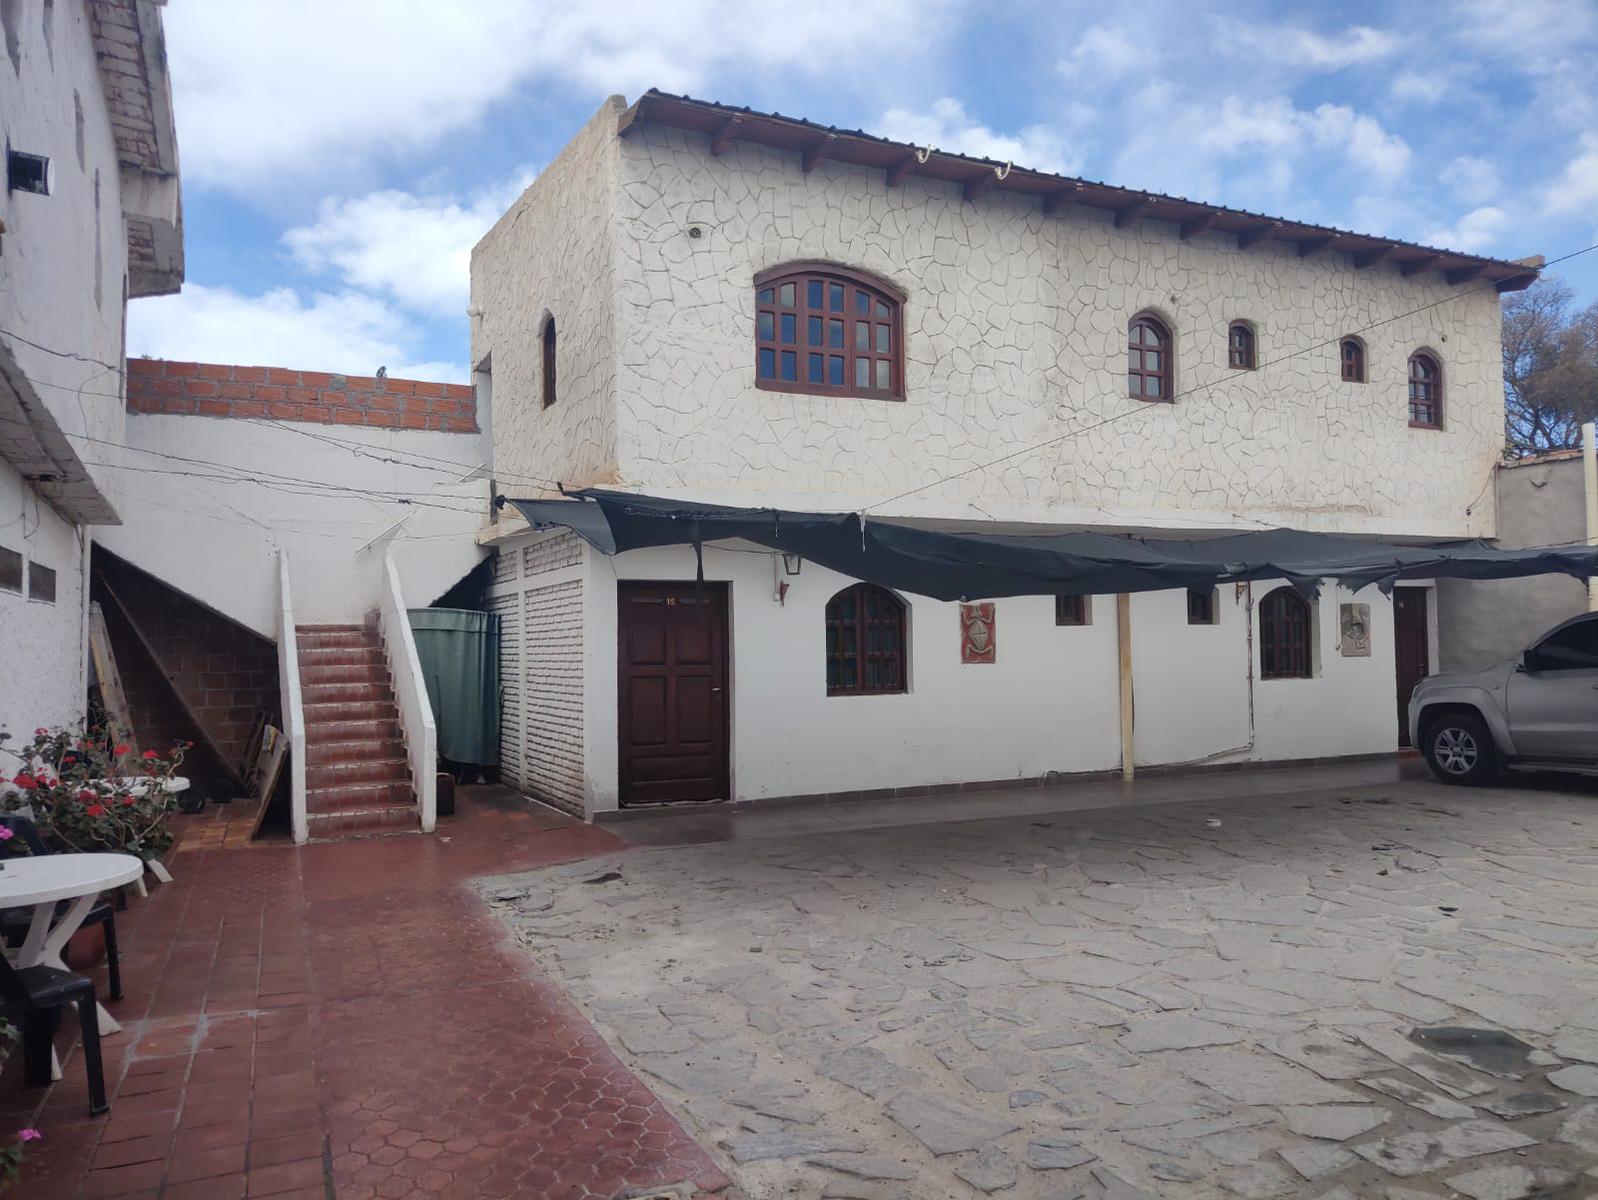 Hotel y locales comerciales en Amaicha del Valle, frente a la Plaza Principal